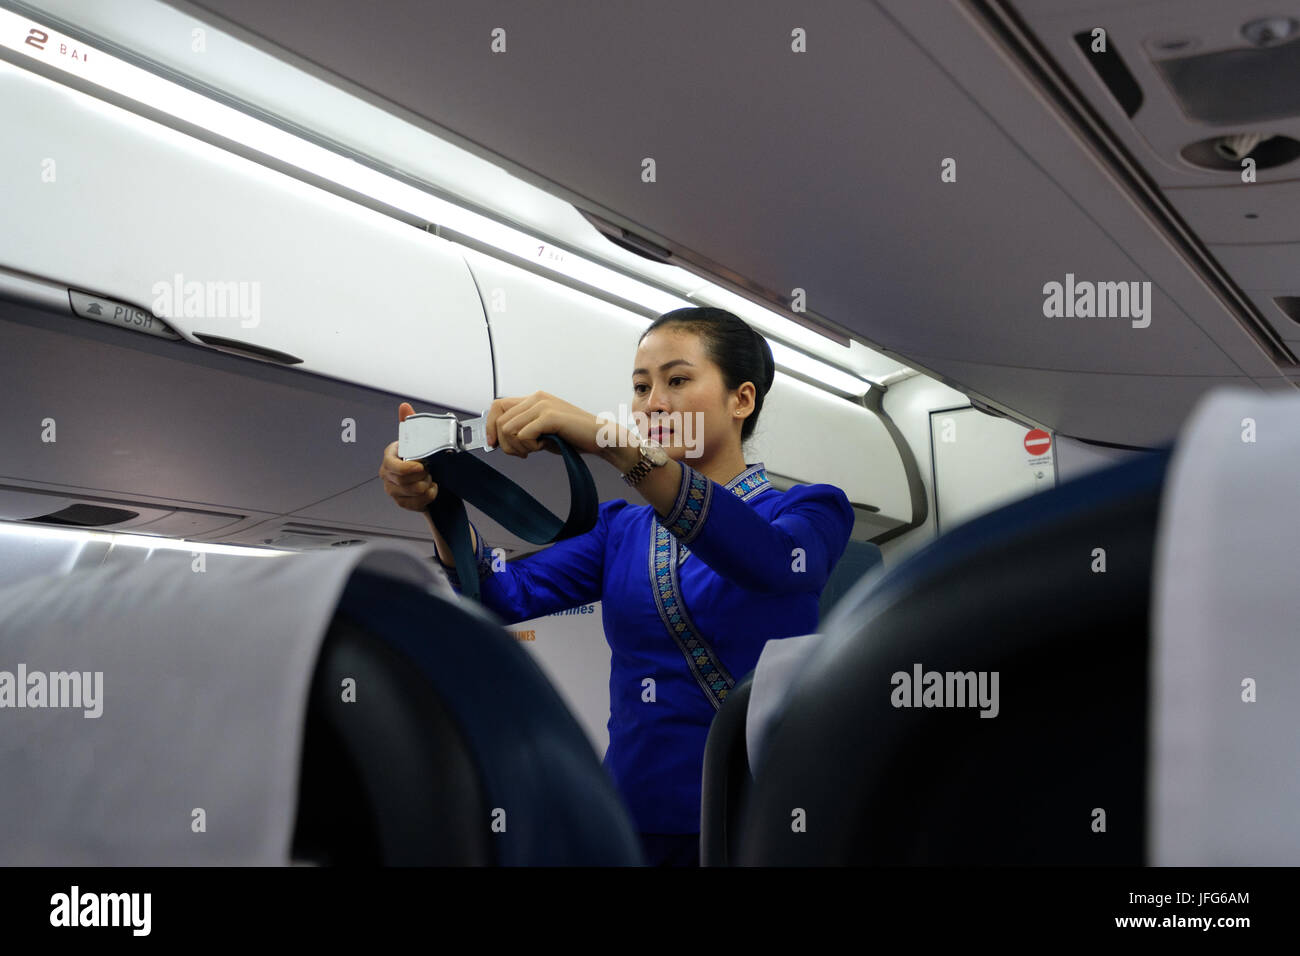 En uniforme d'hôtesse de vol montrant comment utiliser la ceinture de sécurité de l'avion pendant les procédures de sécurité Banque D'Images